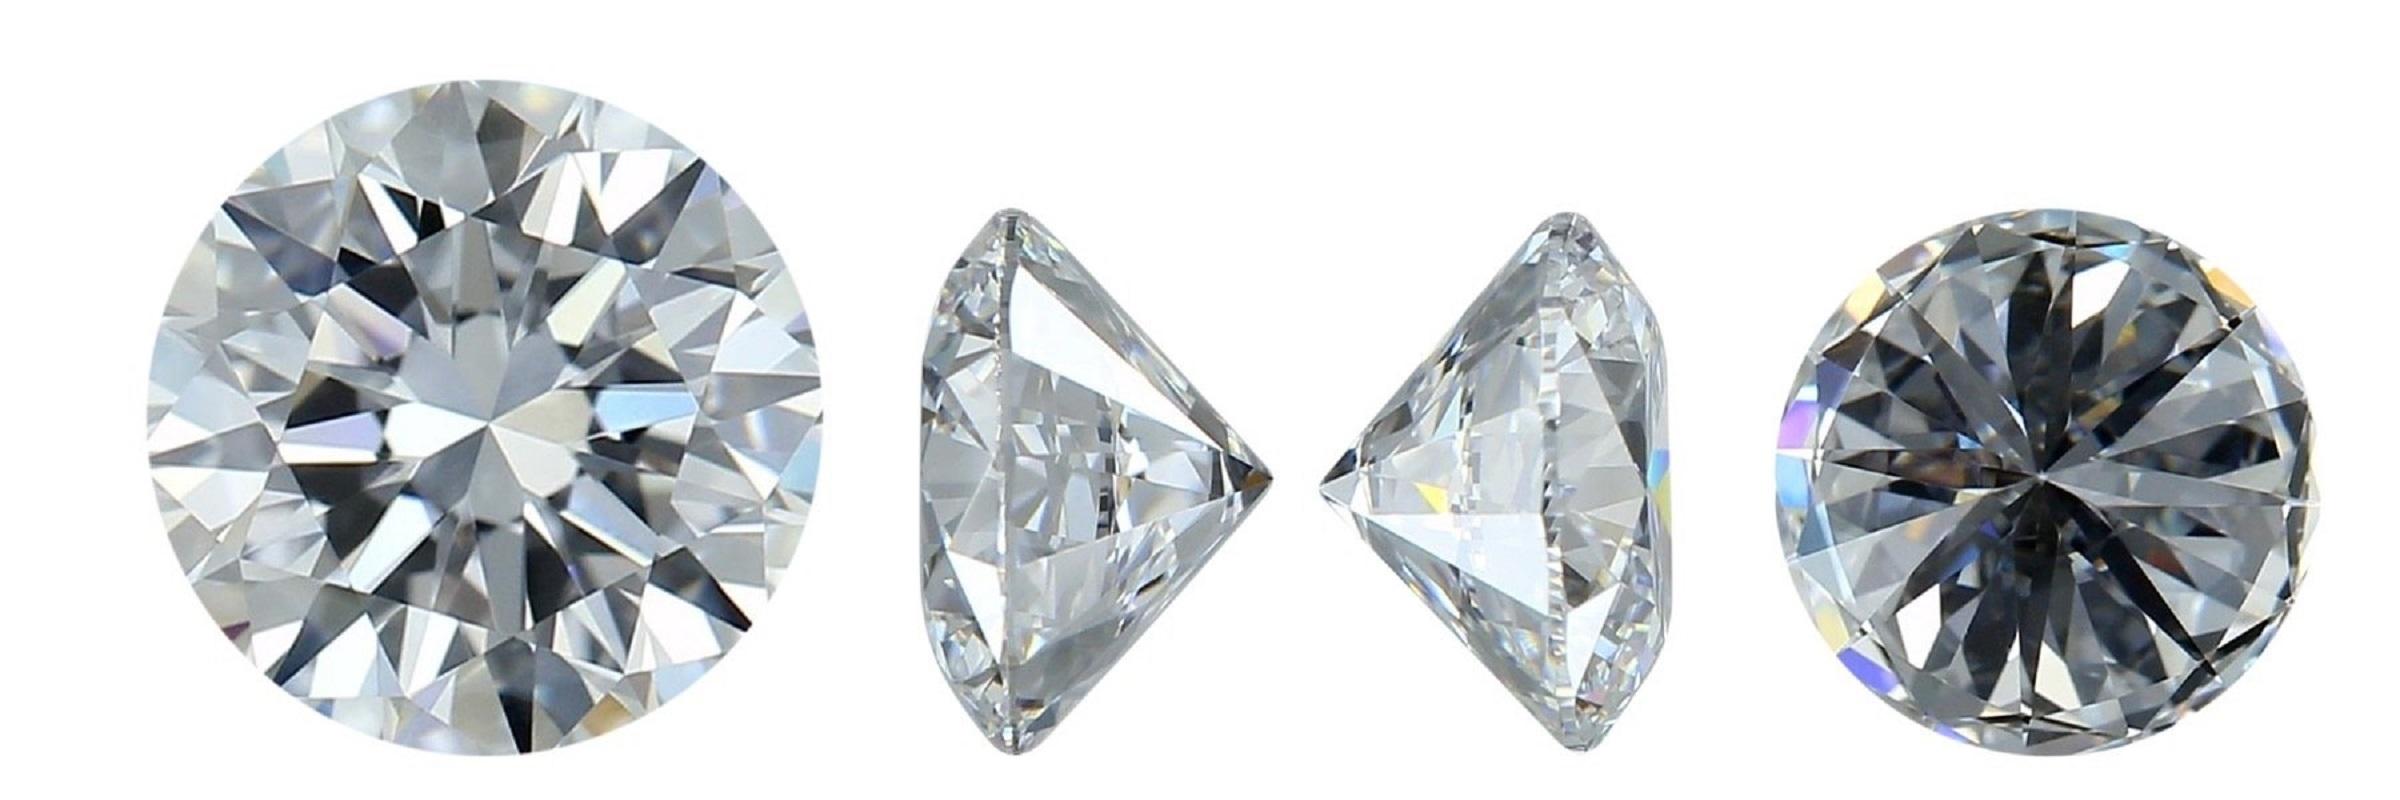 Diamant brillant rond naturel de 1,06 carat E VVS1, classé par le laboratoire GIA, présentant une excellente taille et une brillance extrême. Ce diamant est accompagné d'un certificat GIA et d'un numéro d'inscription au laser.

GIA 6445240560

Sku :